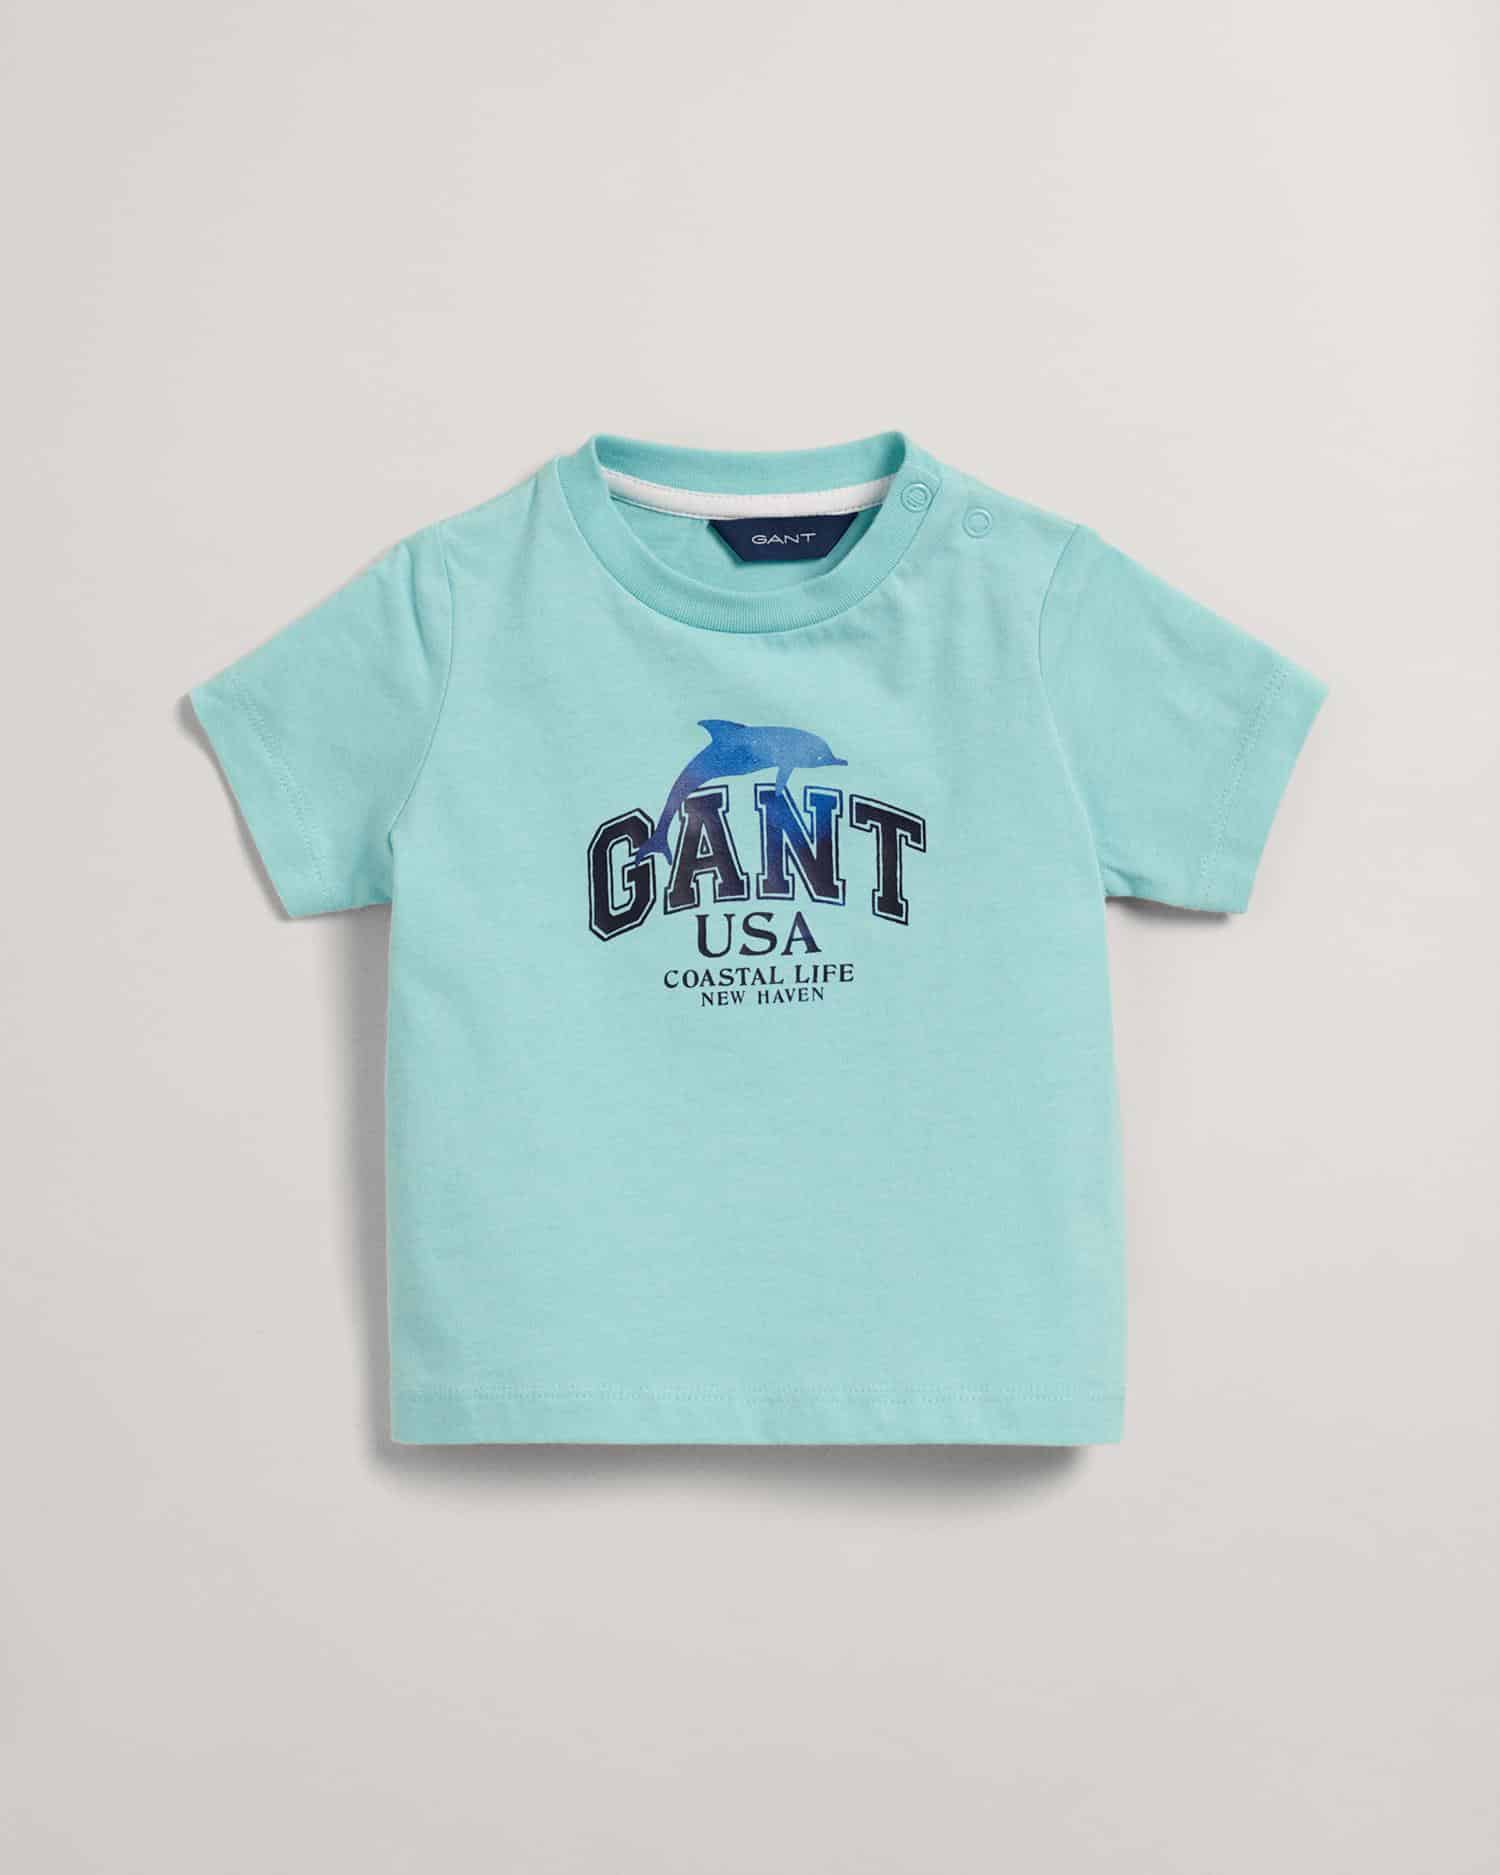 Gant boys turquoise tshirt with large logo